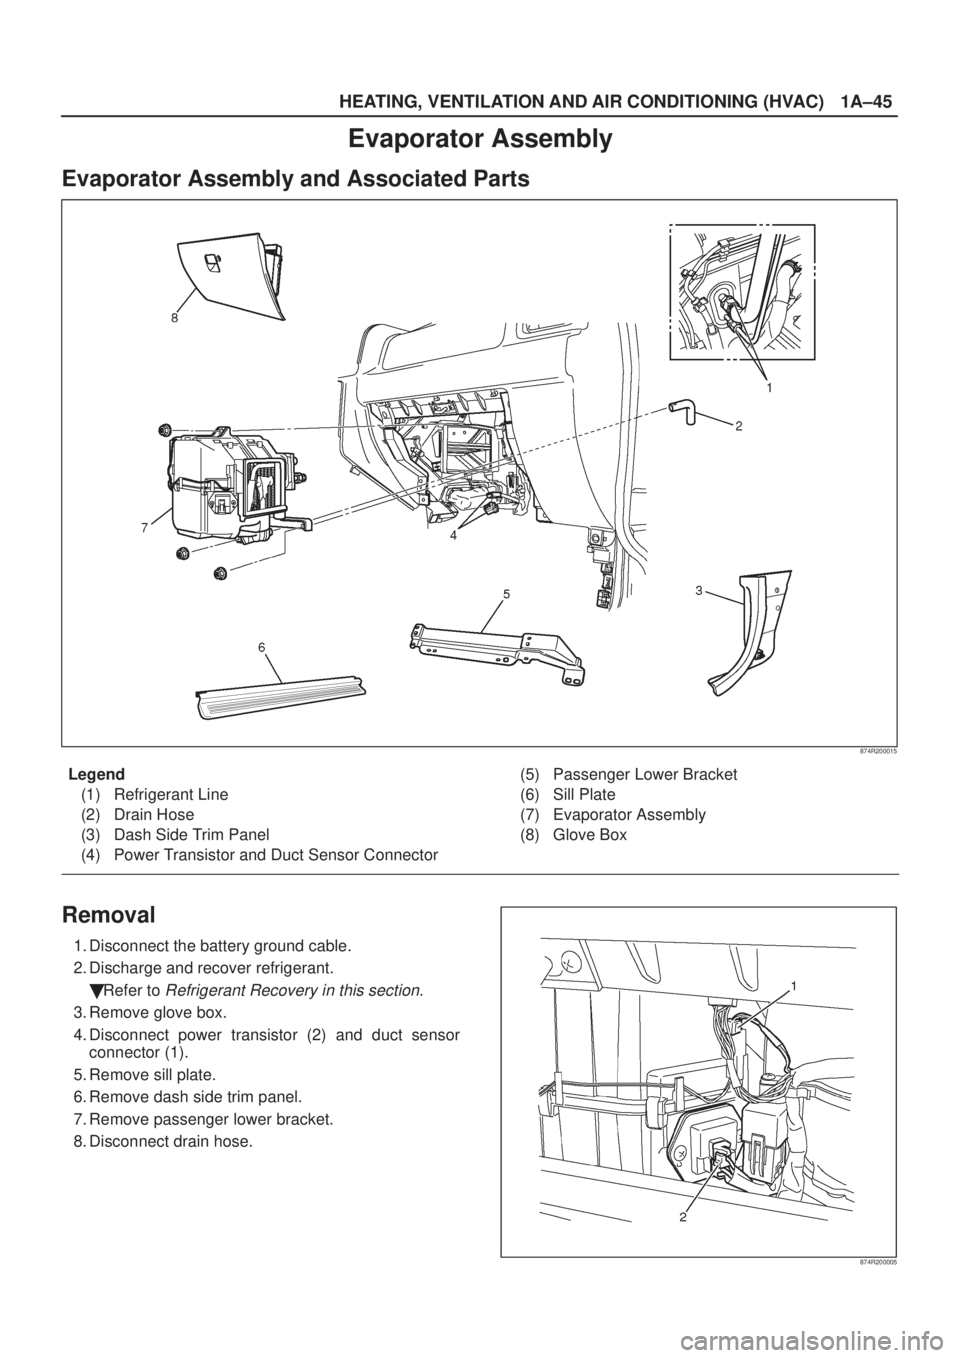 ISUZU AXIOM 2002  Service Manual PDF HEATING, VENTILATION AND AIR CONDITIONING (HVAC)
1A±45
Evaporator Assembly
Evaporator Assembly and Associated Parts
874R200015
Legend
(1) Refrigerant Line
(2) Drain Hose
(3) Dash Side Trim Panel
(4) 